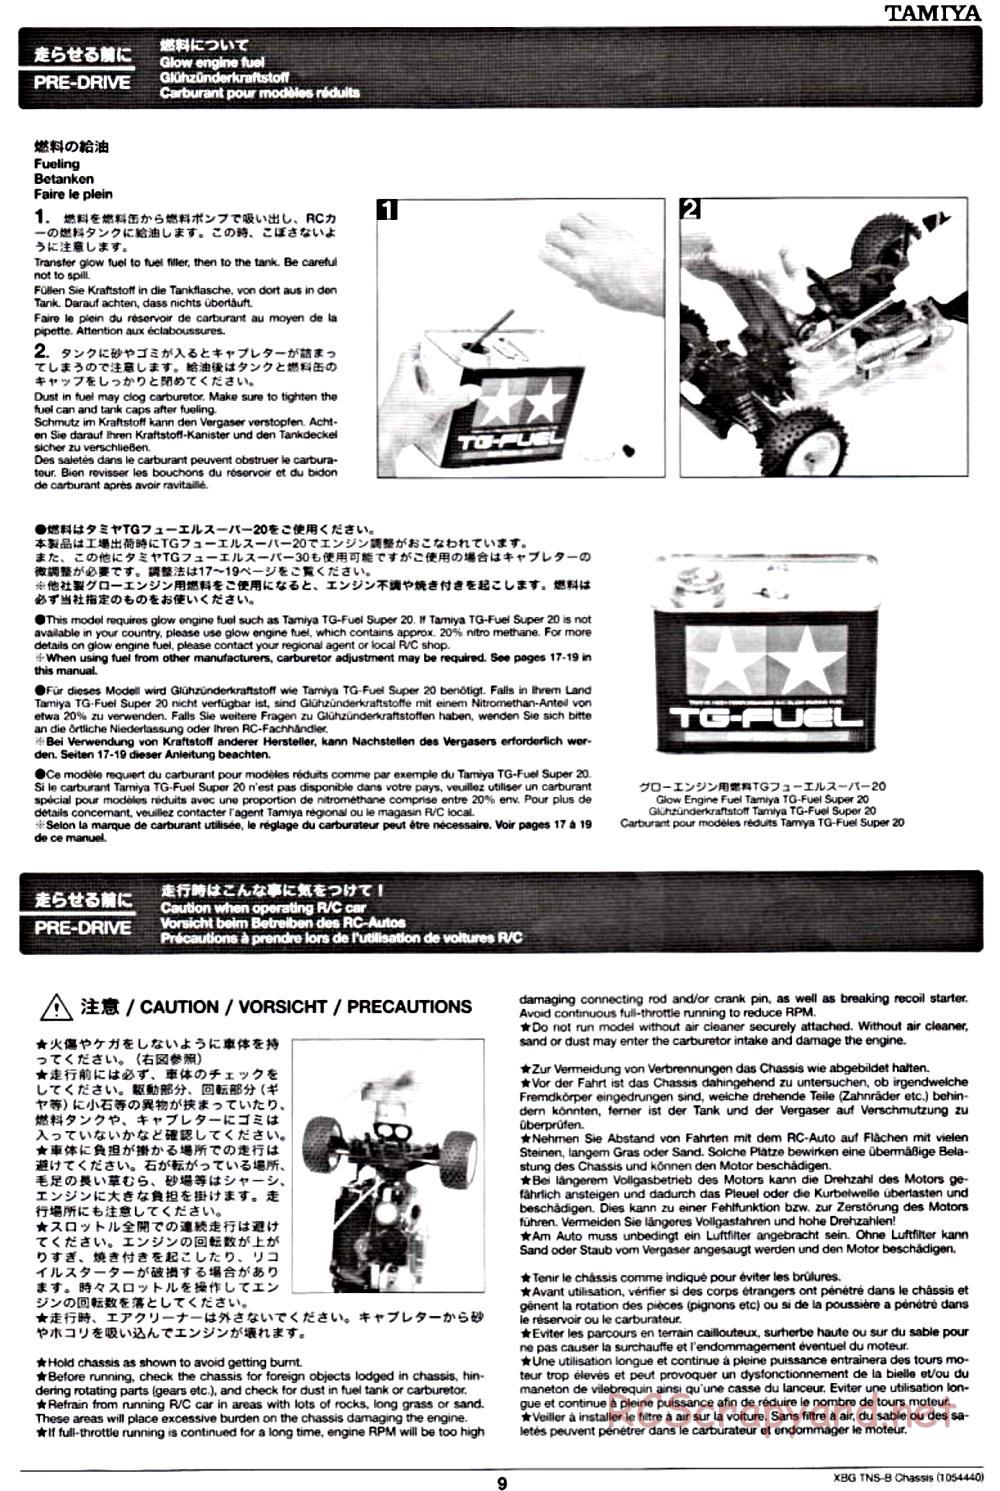 Tamiya - TNS-B Chassis - Manual - Page 9